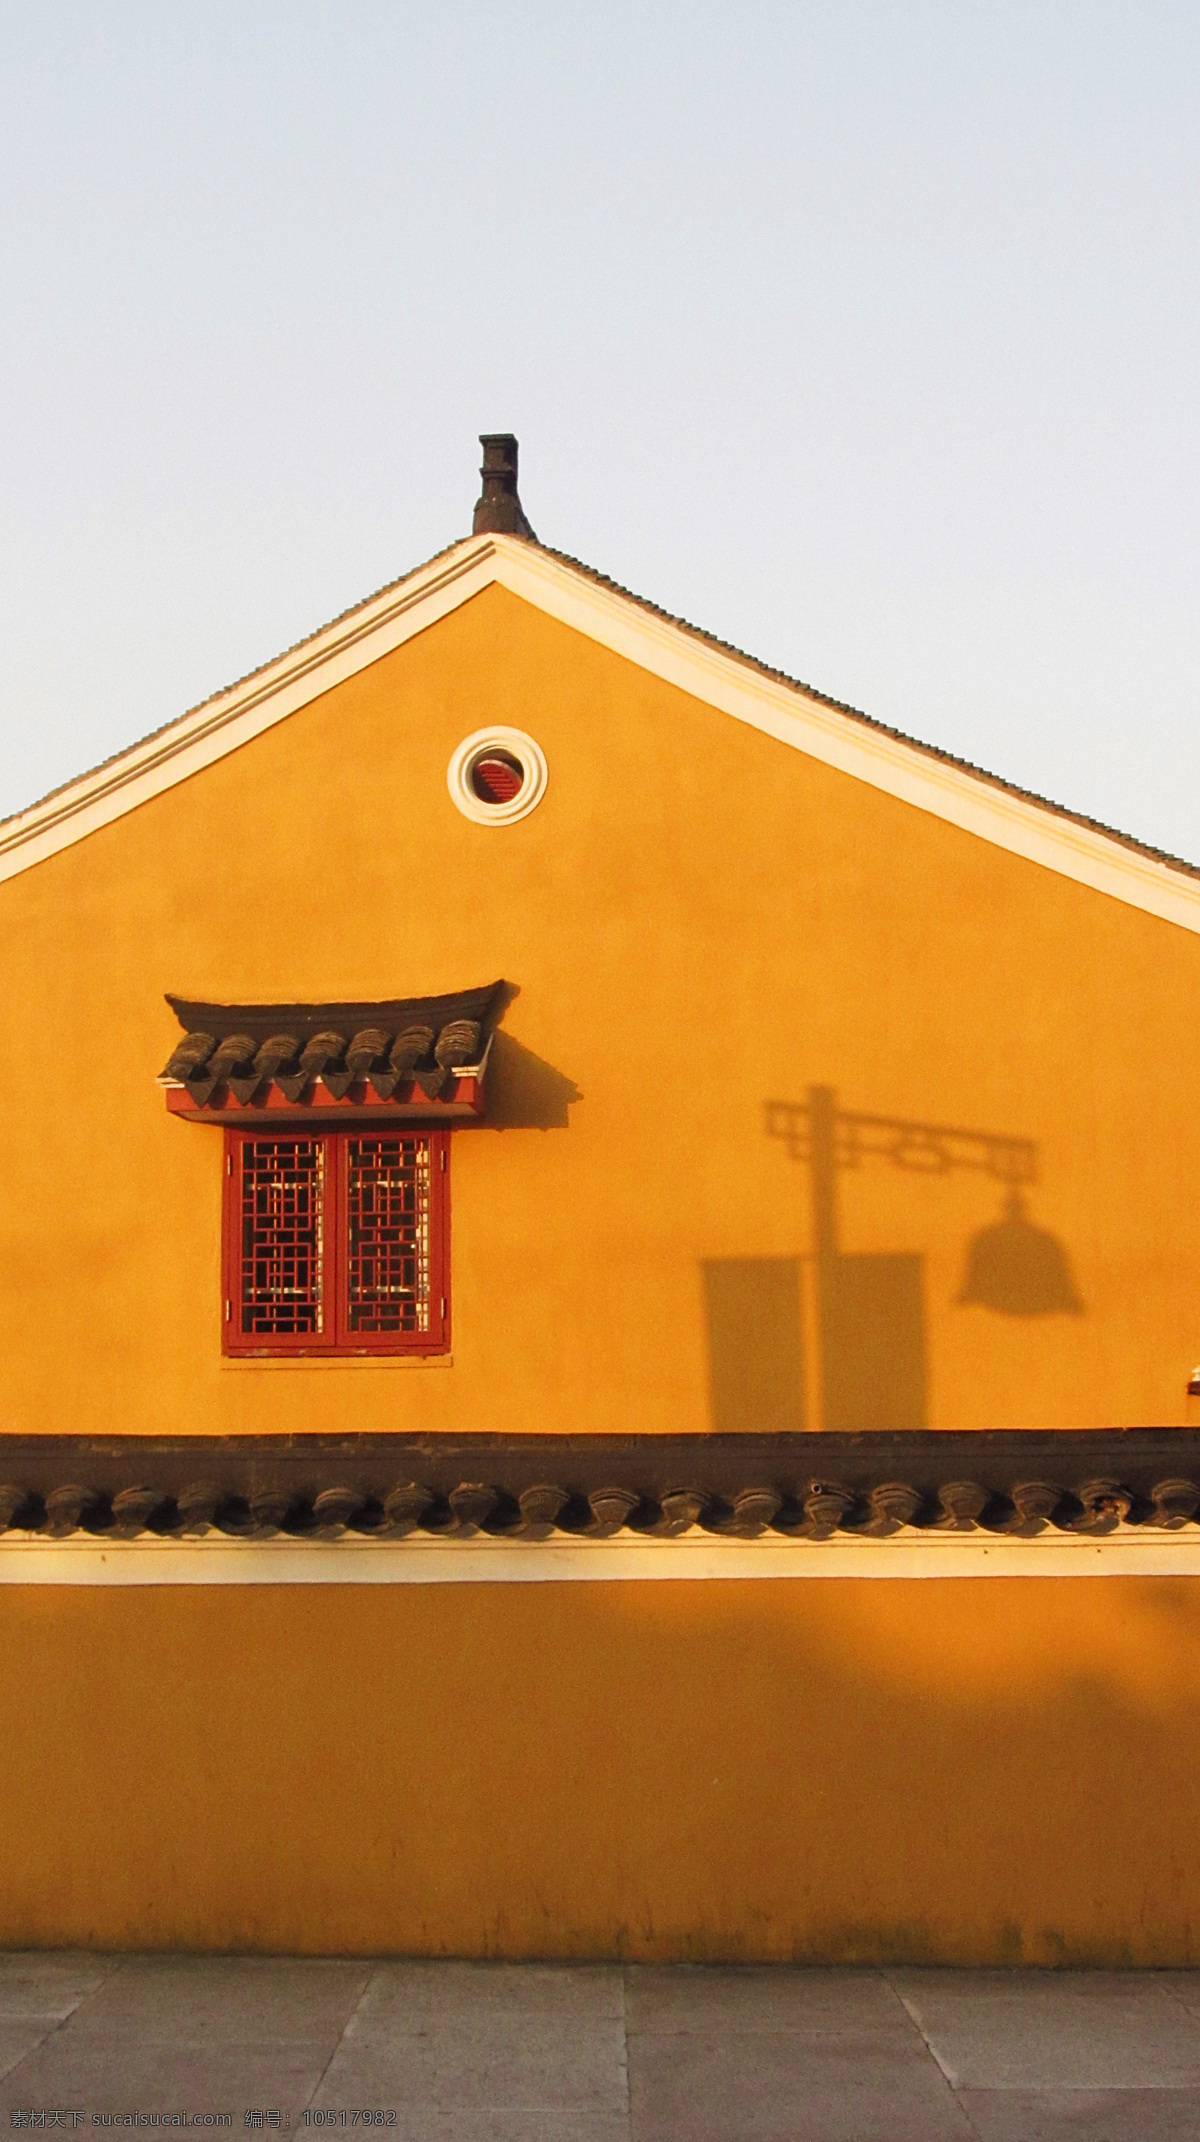 几何构成红墙 几何 构成 红墙 寺院 墙壁 影子 红窗 古朴 禅 屋顶 国内旅游 旅游摄影